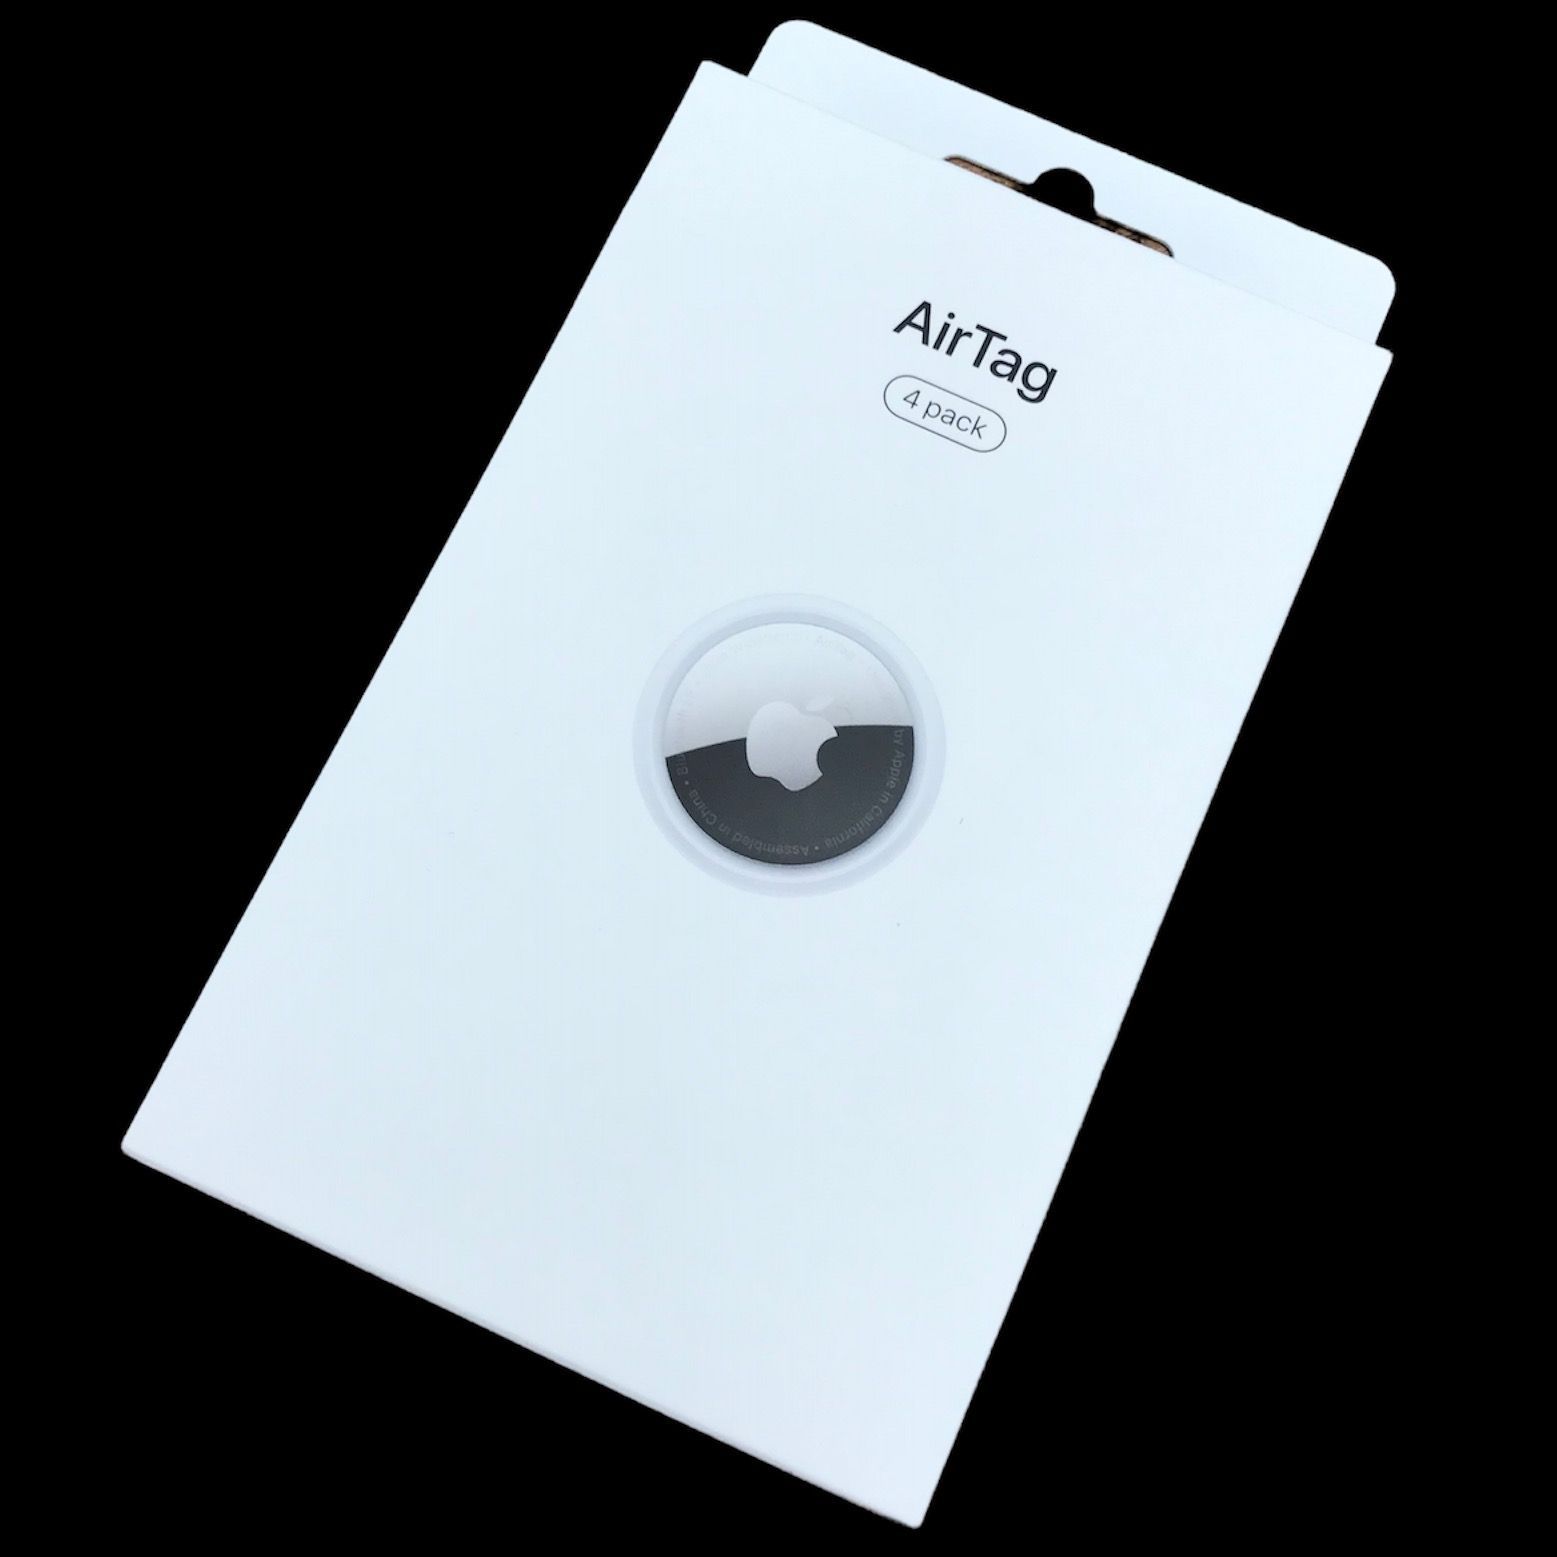 θ【新品未開封】Apple AirTag 4パック MX542ZP/A - 買取ELITE メルカリ